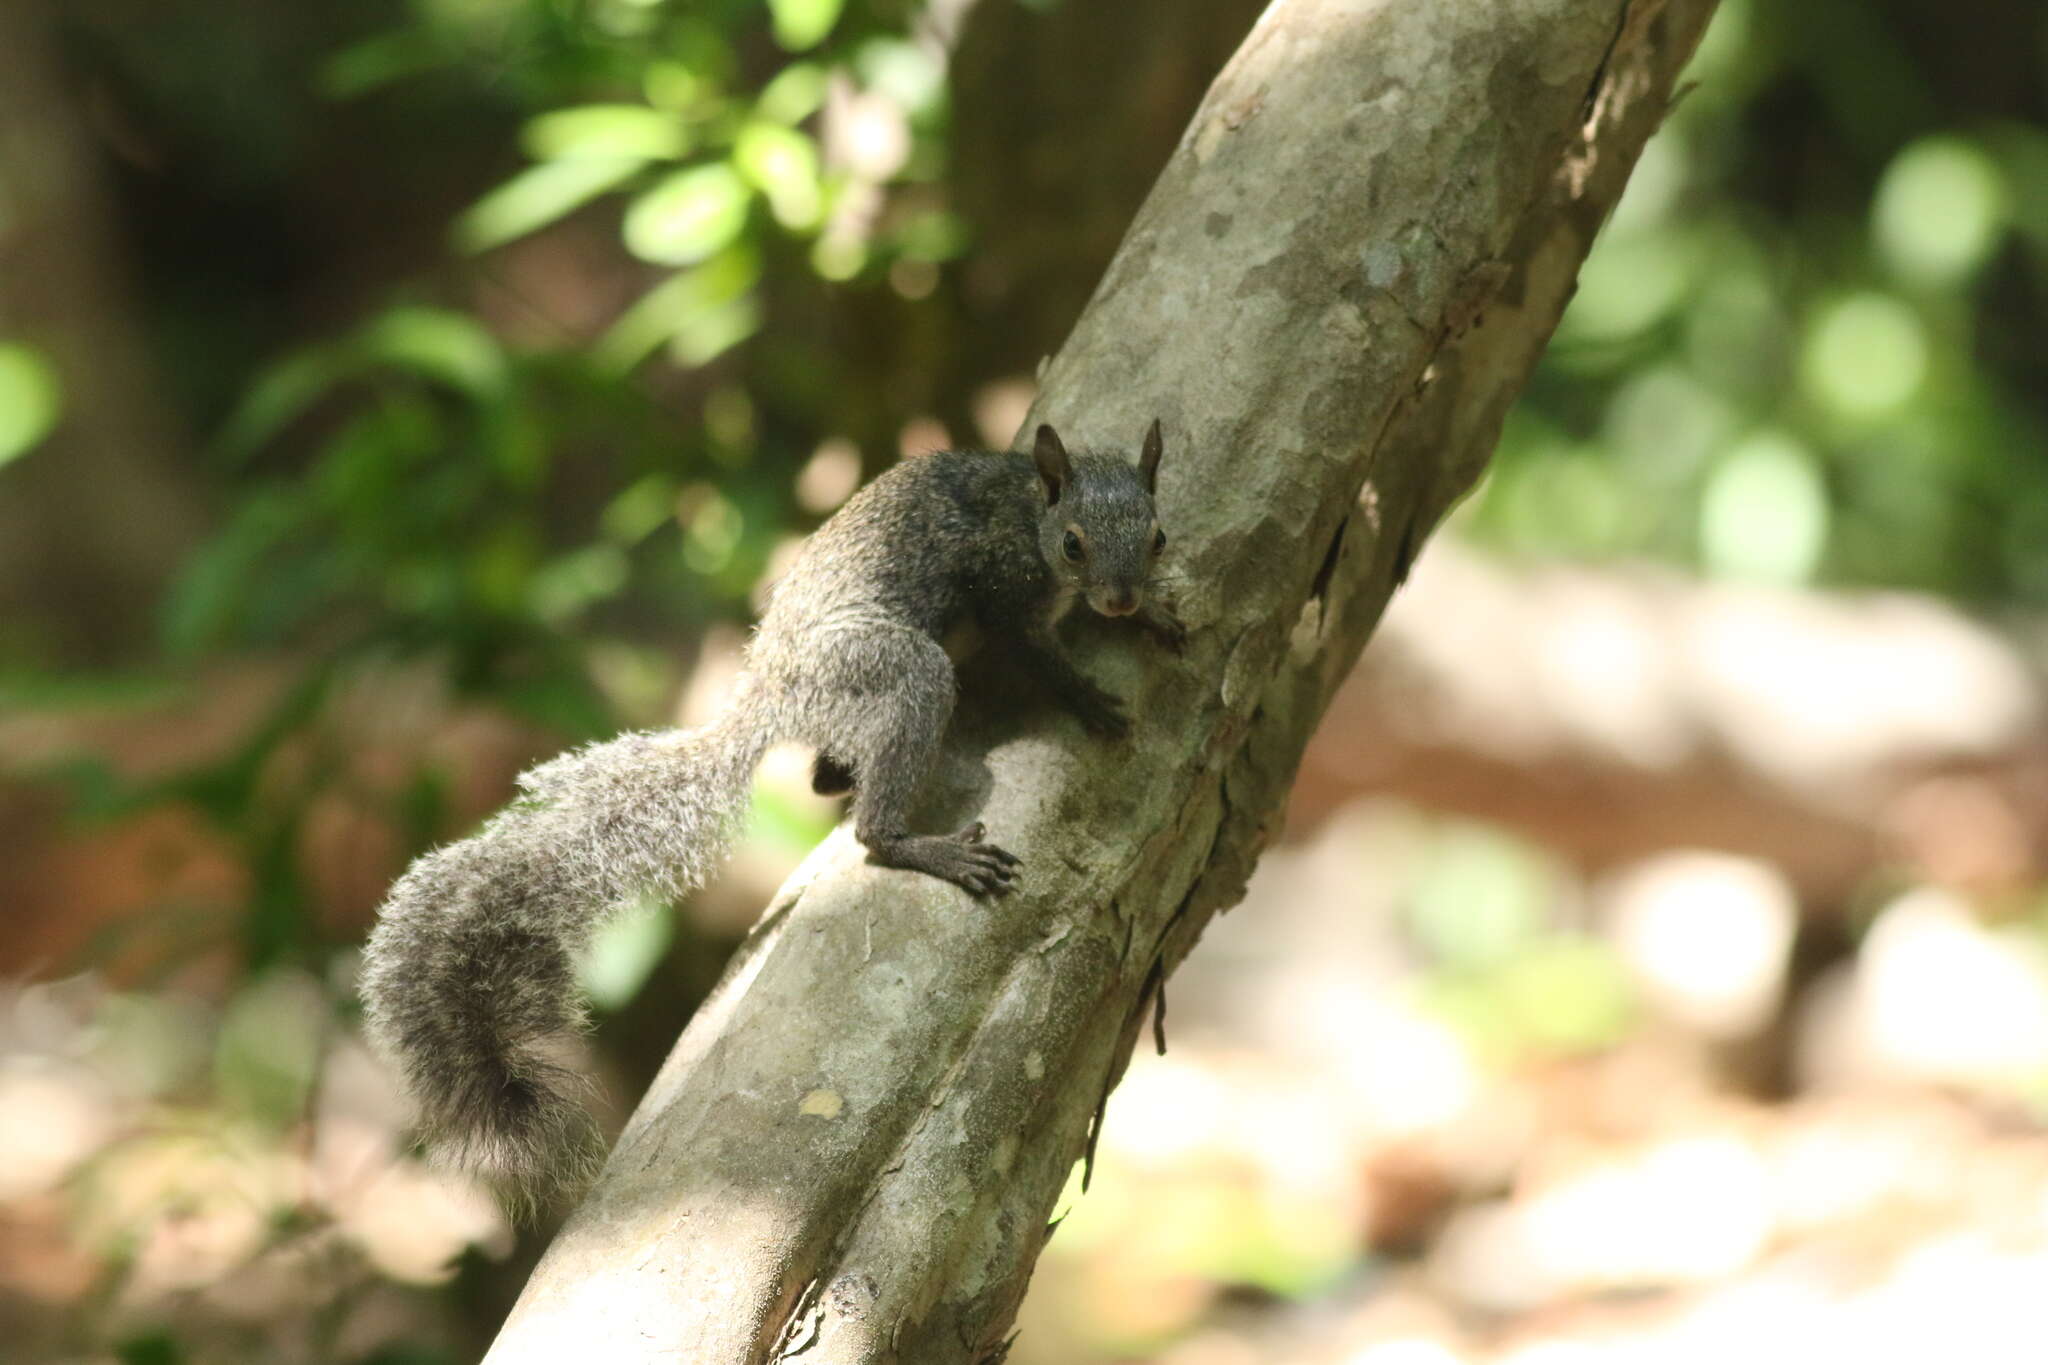 Image of Yucatan Squirrel